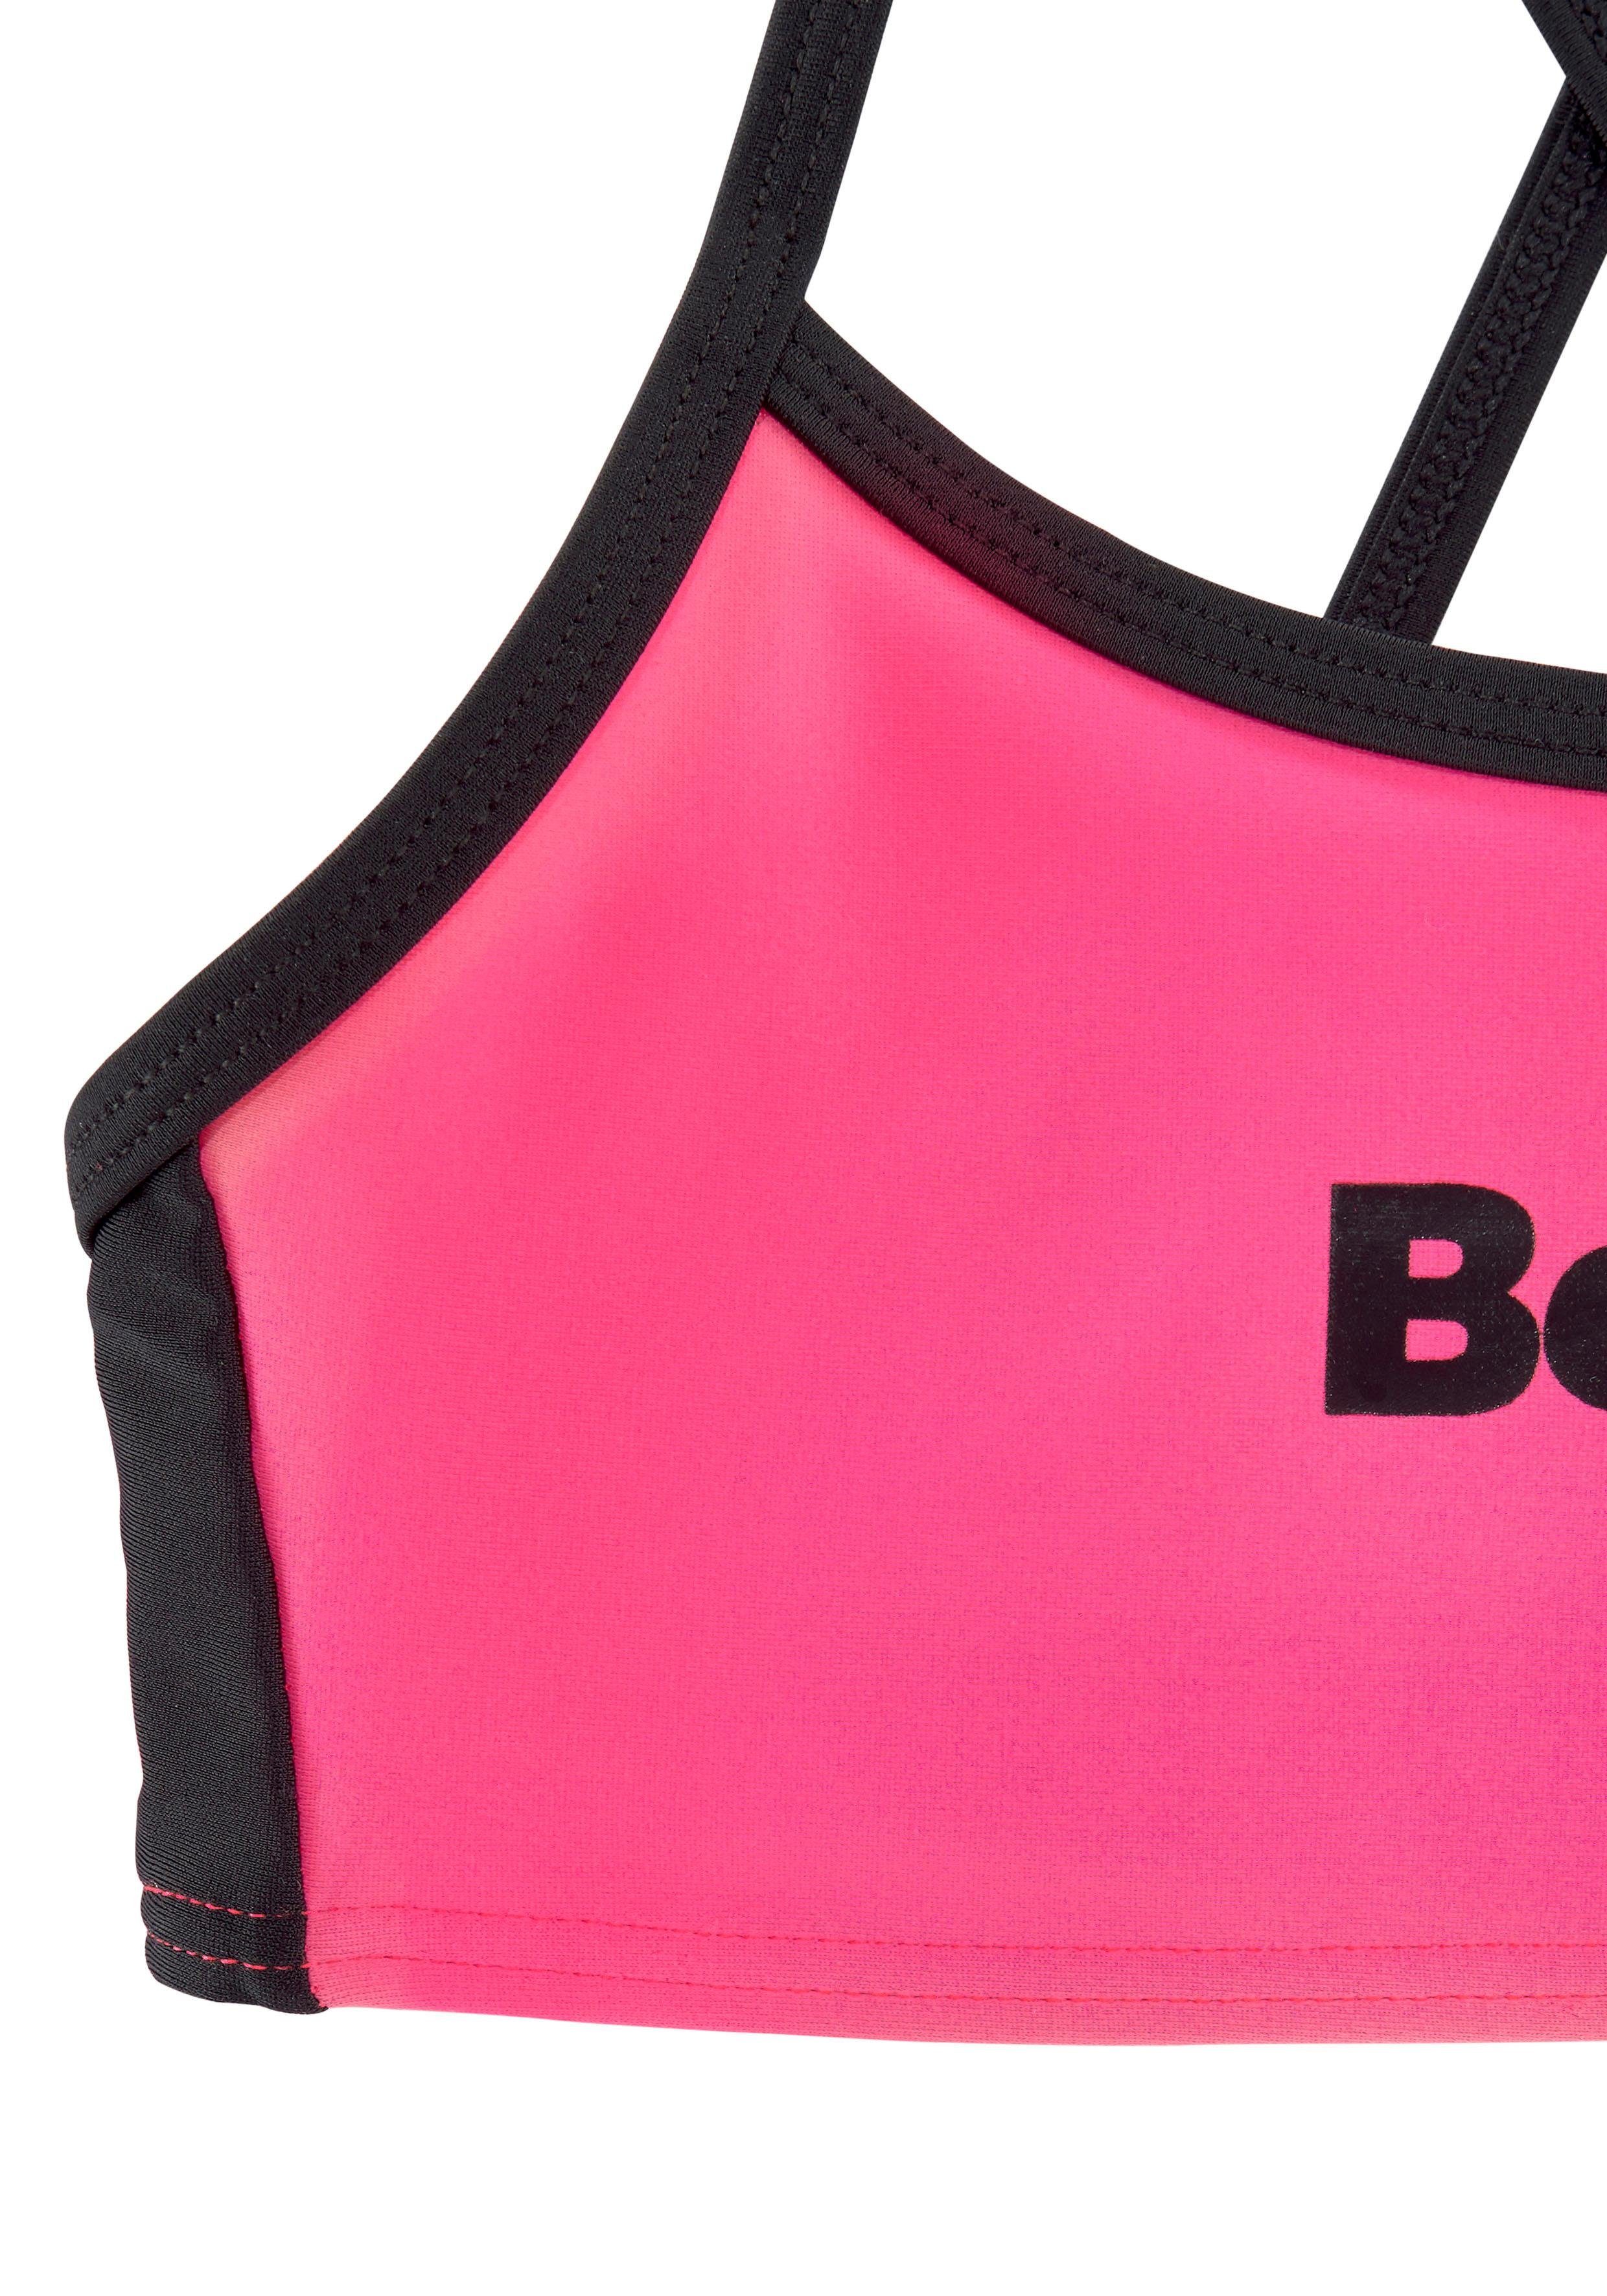 Bustier-Bikini gekreuzten mit Trägern pink-schwarz Bench.